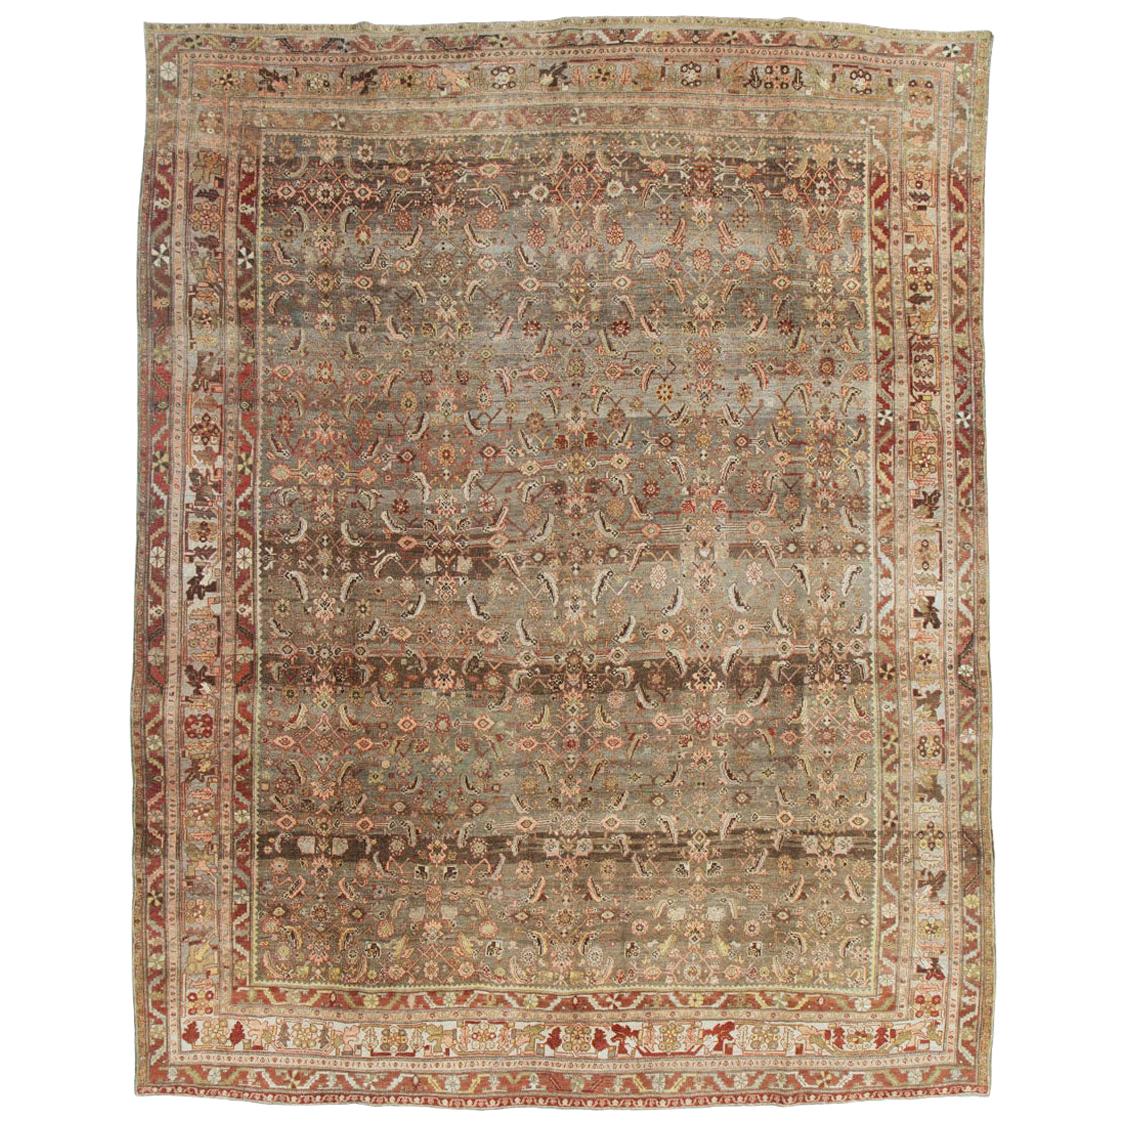 Rustic Early 20th Century Persian Bidjar Room Size Carpet in Earth Tones